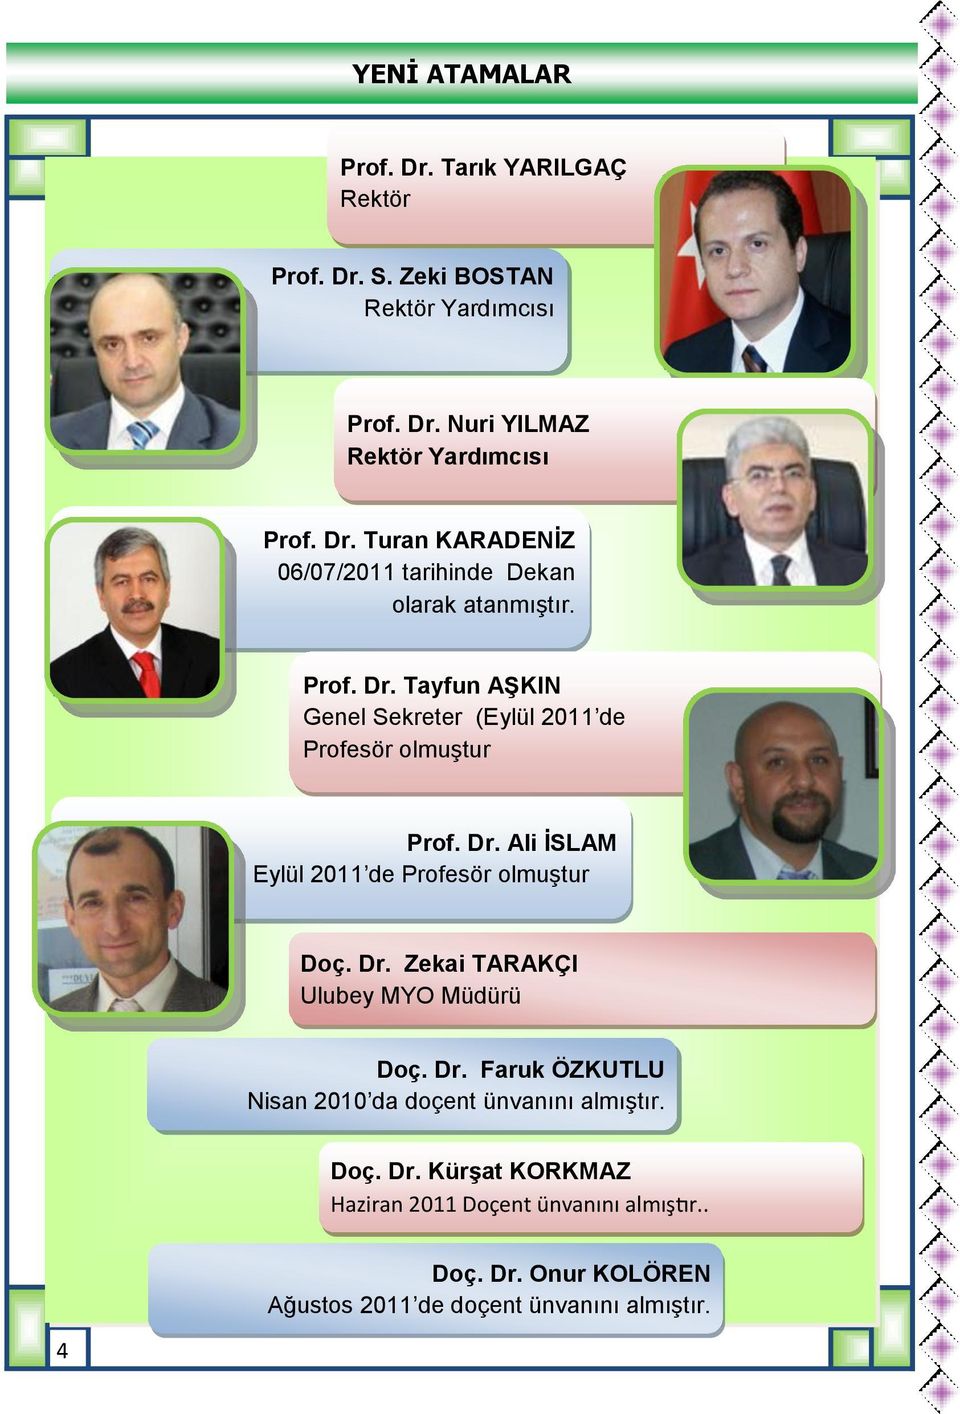 Dr. Faruk ÖZKUTLU Nisan 2010 da doçent ünvanını almıştır. Doç. Dr. Kürşat KORKMAZ Haziran 2011 Doçent ünvanını almıştır.. Doç. Dr. Onur KOLÖREN Ağustos 2011 de doçent ünvanını almıştır.